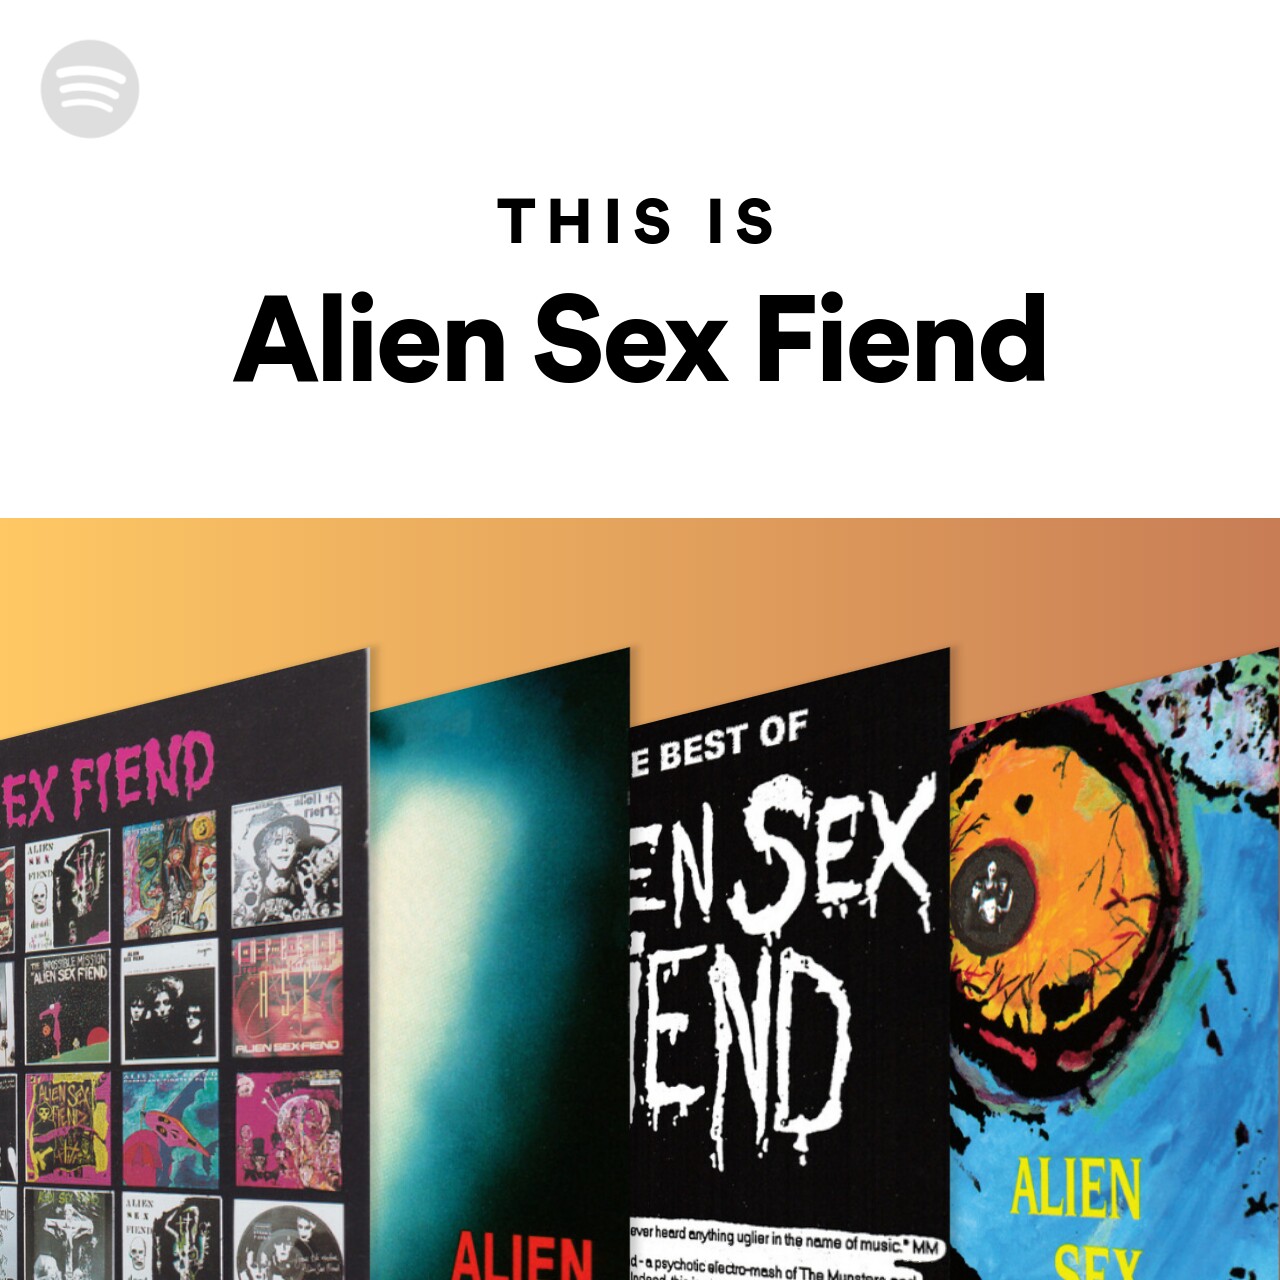 This Is Alien Sex Fiend